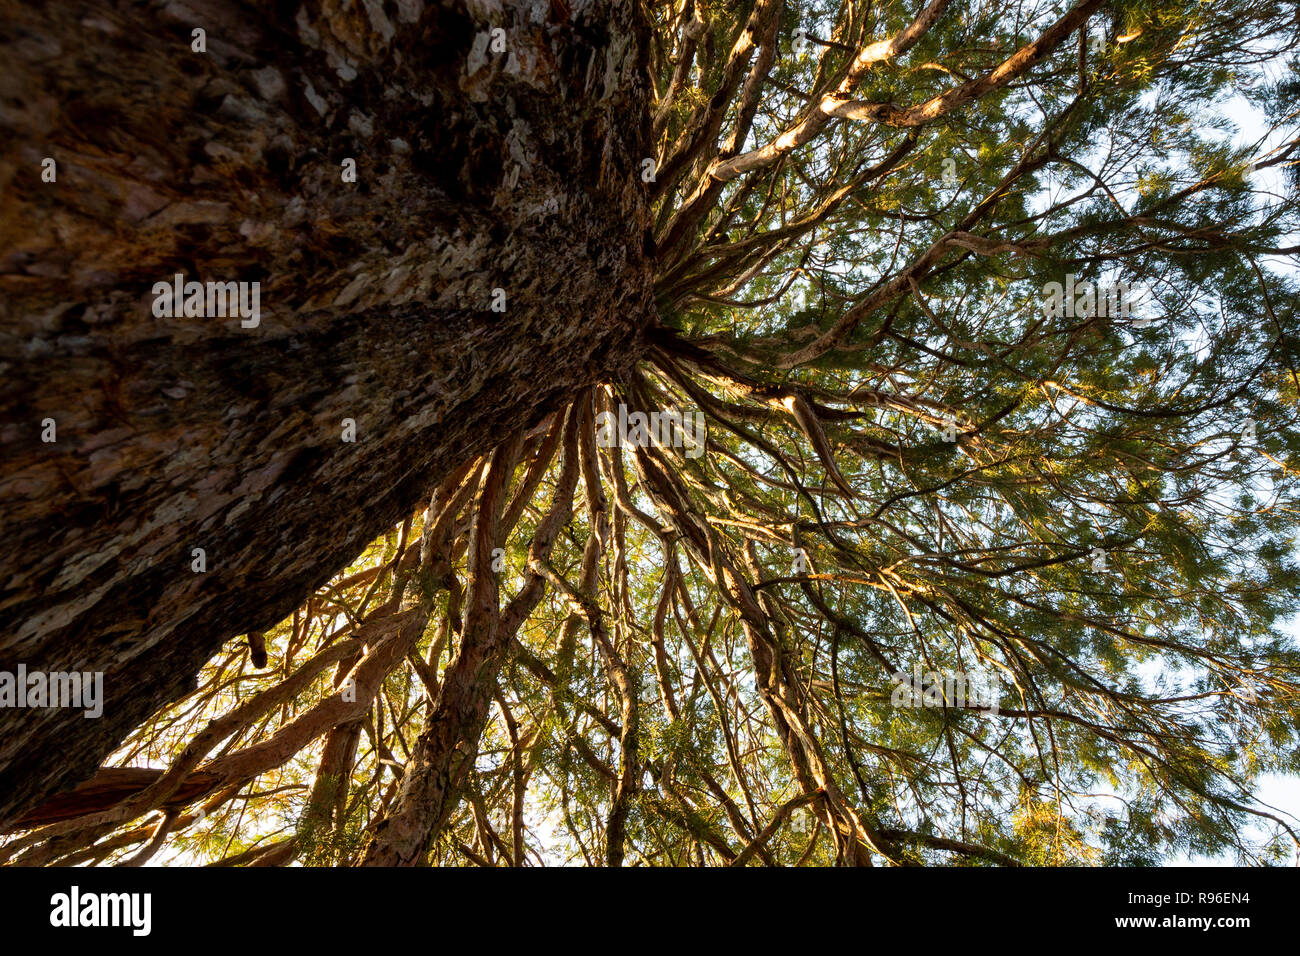 Secoyas Gigantes Sequoiadendron giganteum ramas fotografiado desde abajo hacia arriba. Composición del tronco y ramas radiales. Foto de stock